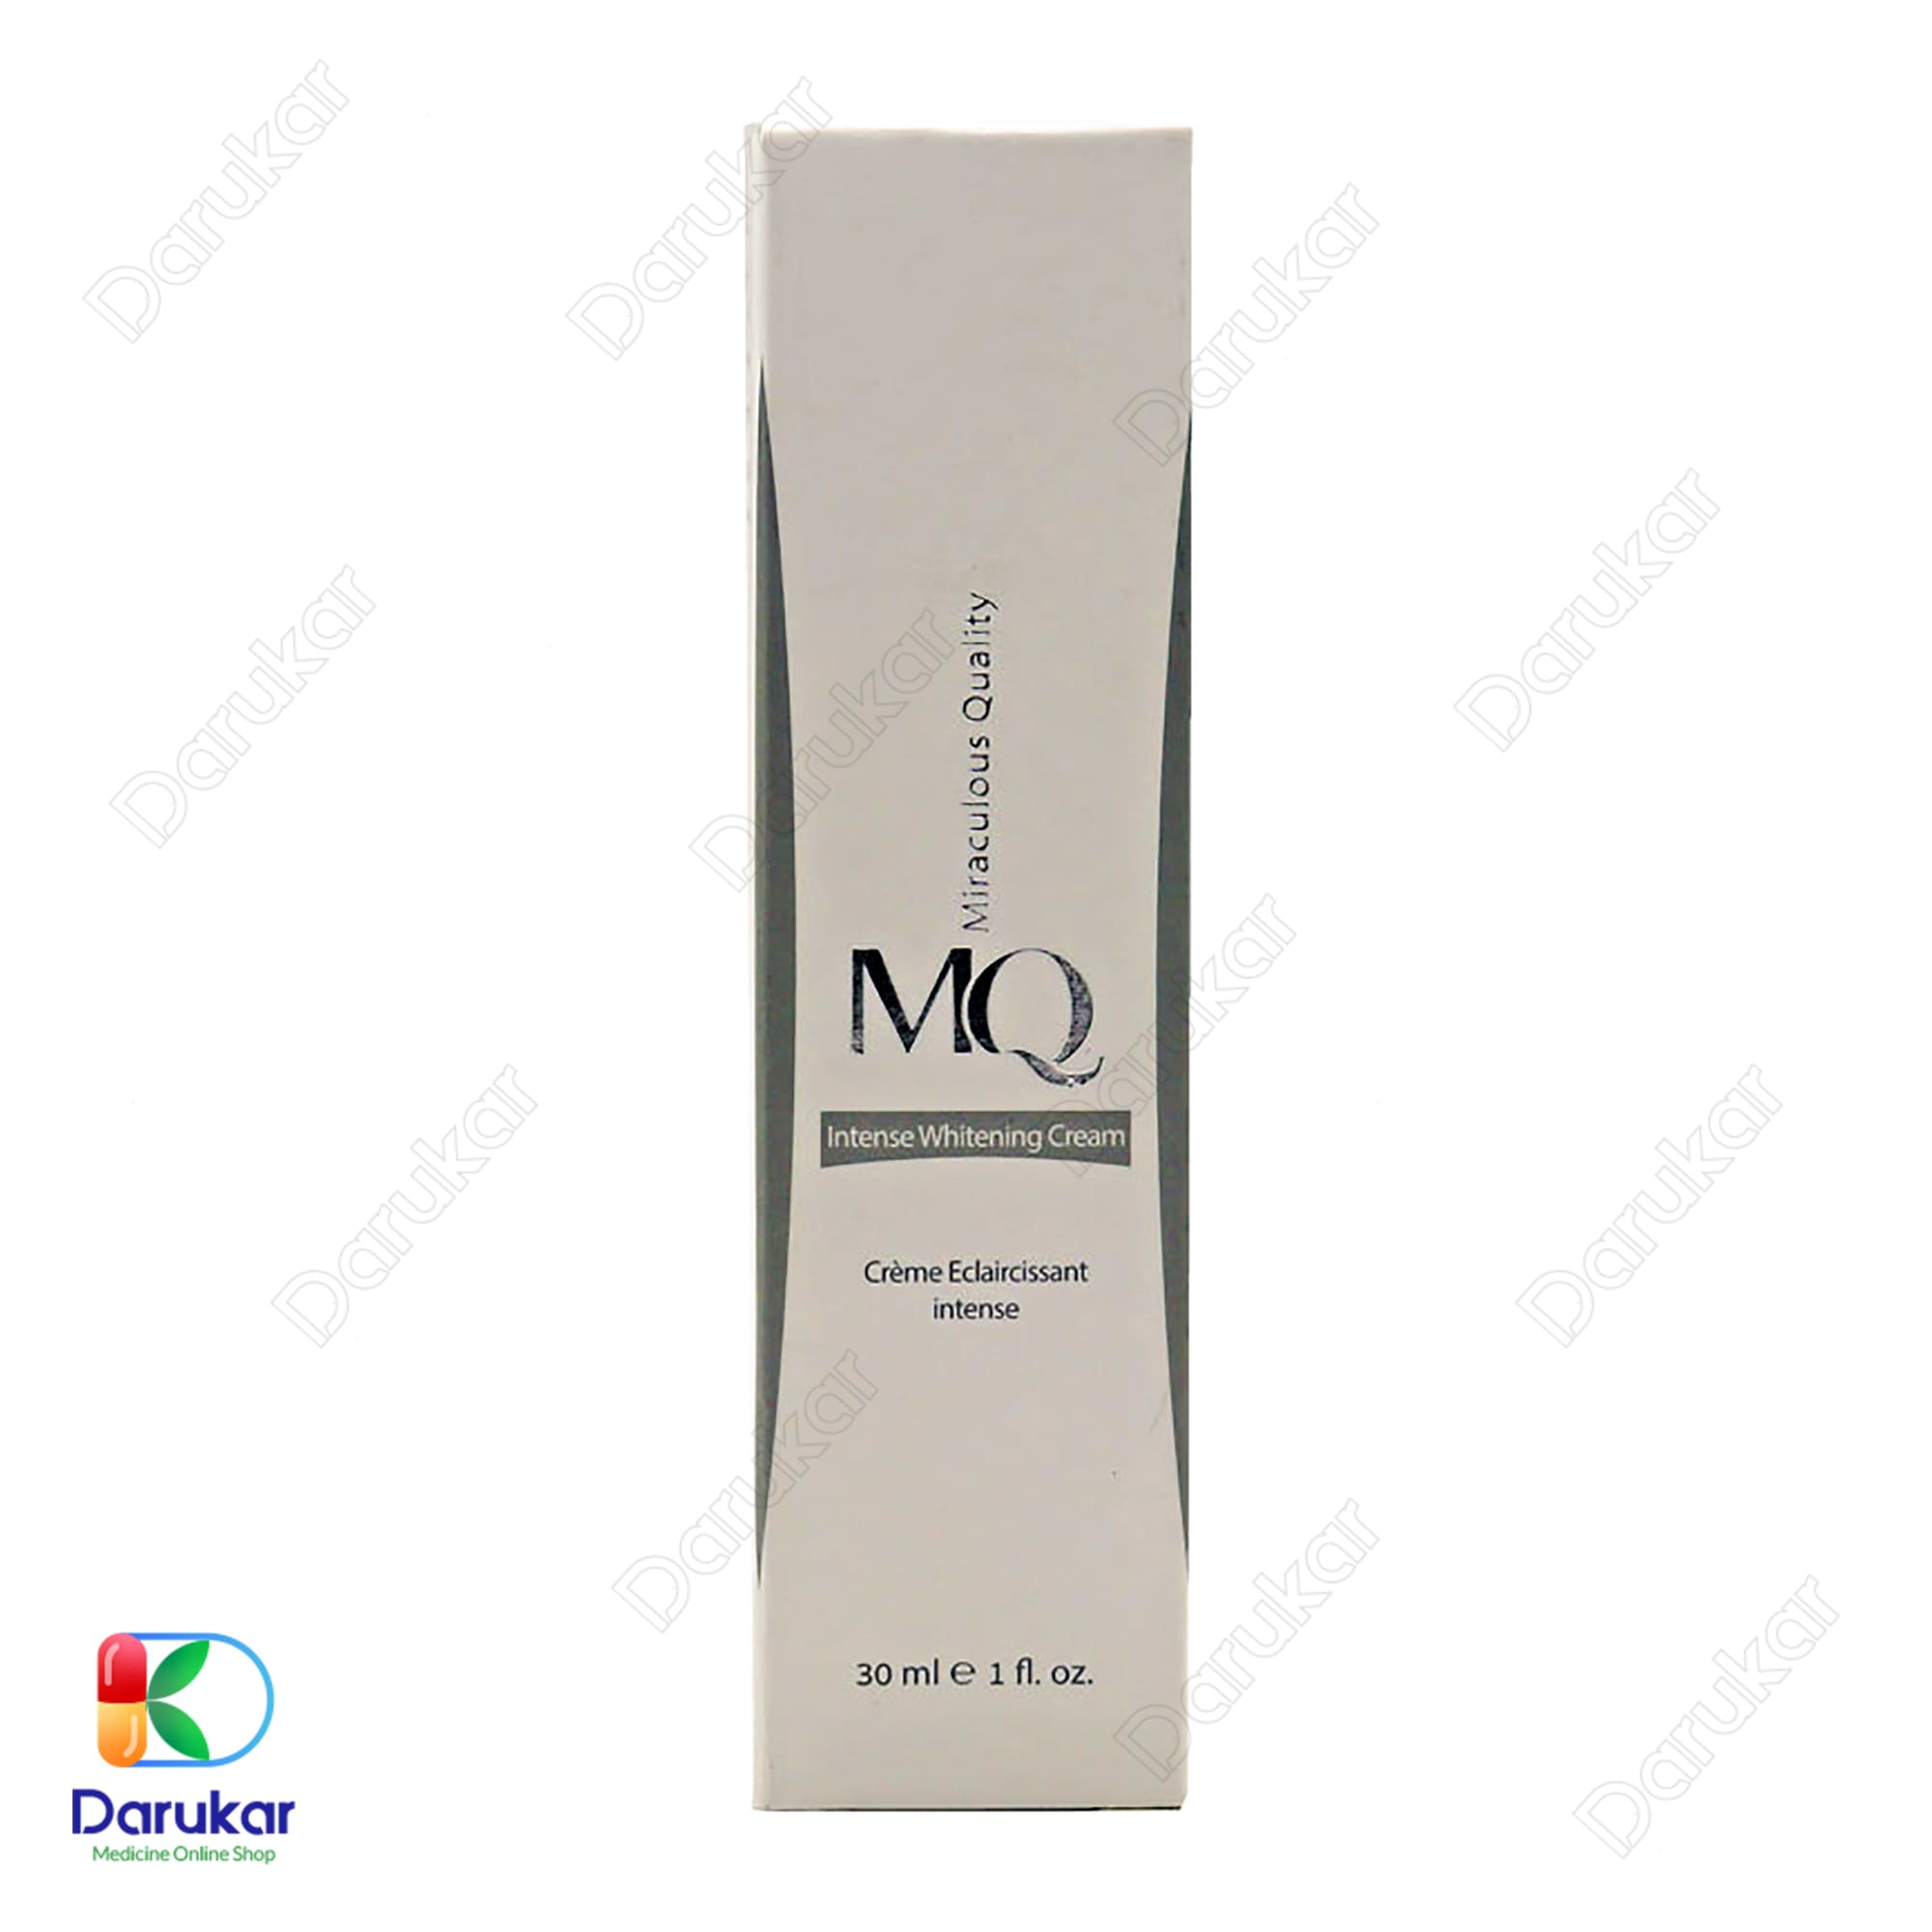 MQ Intense Whitening Cream 30 ml 1